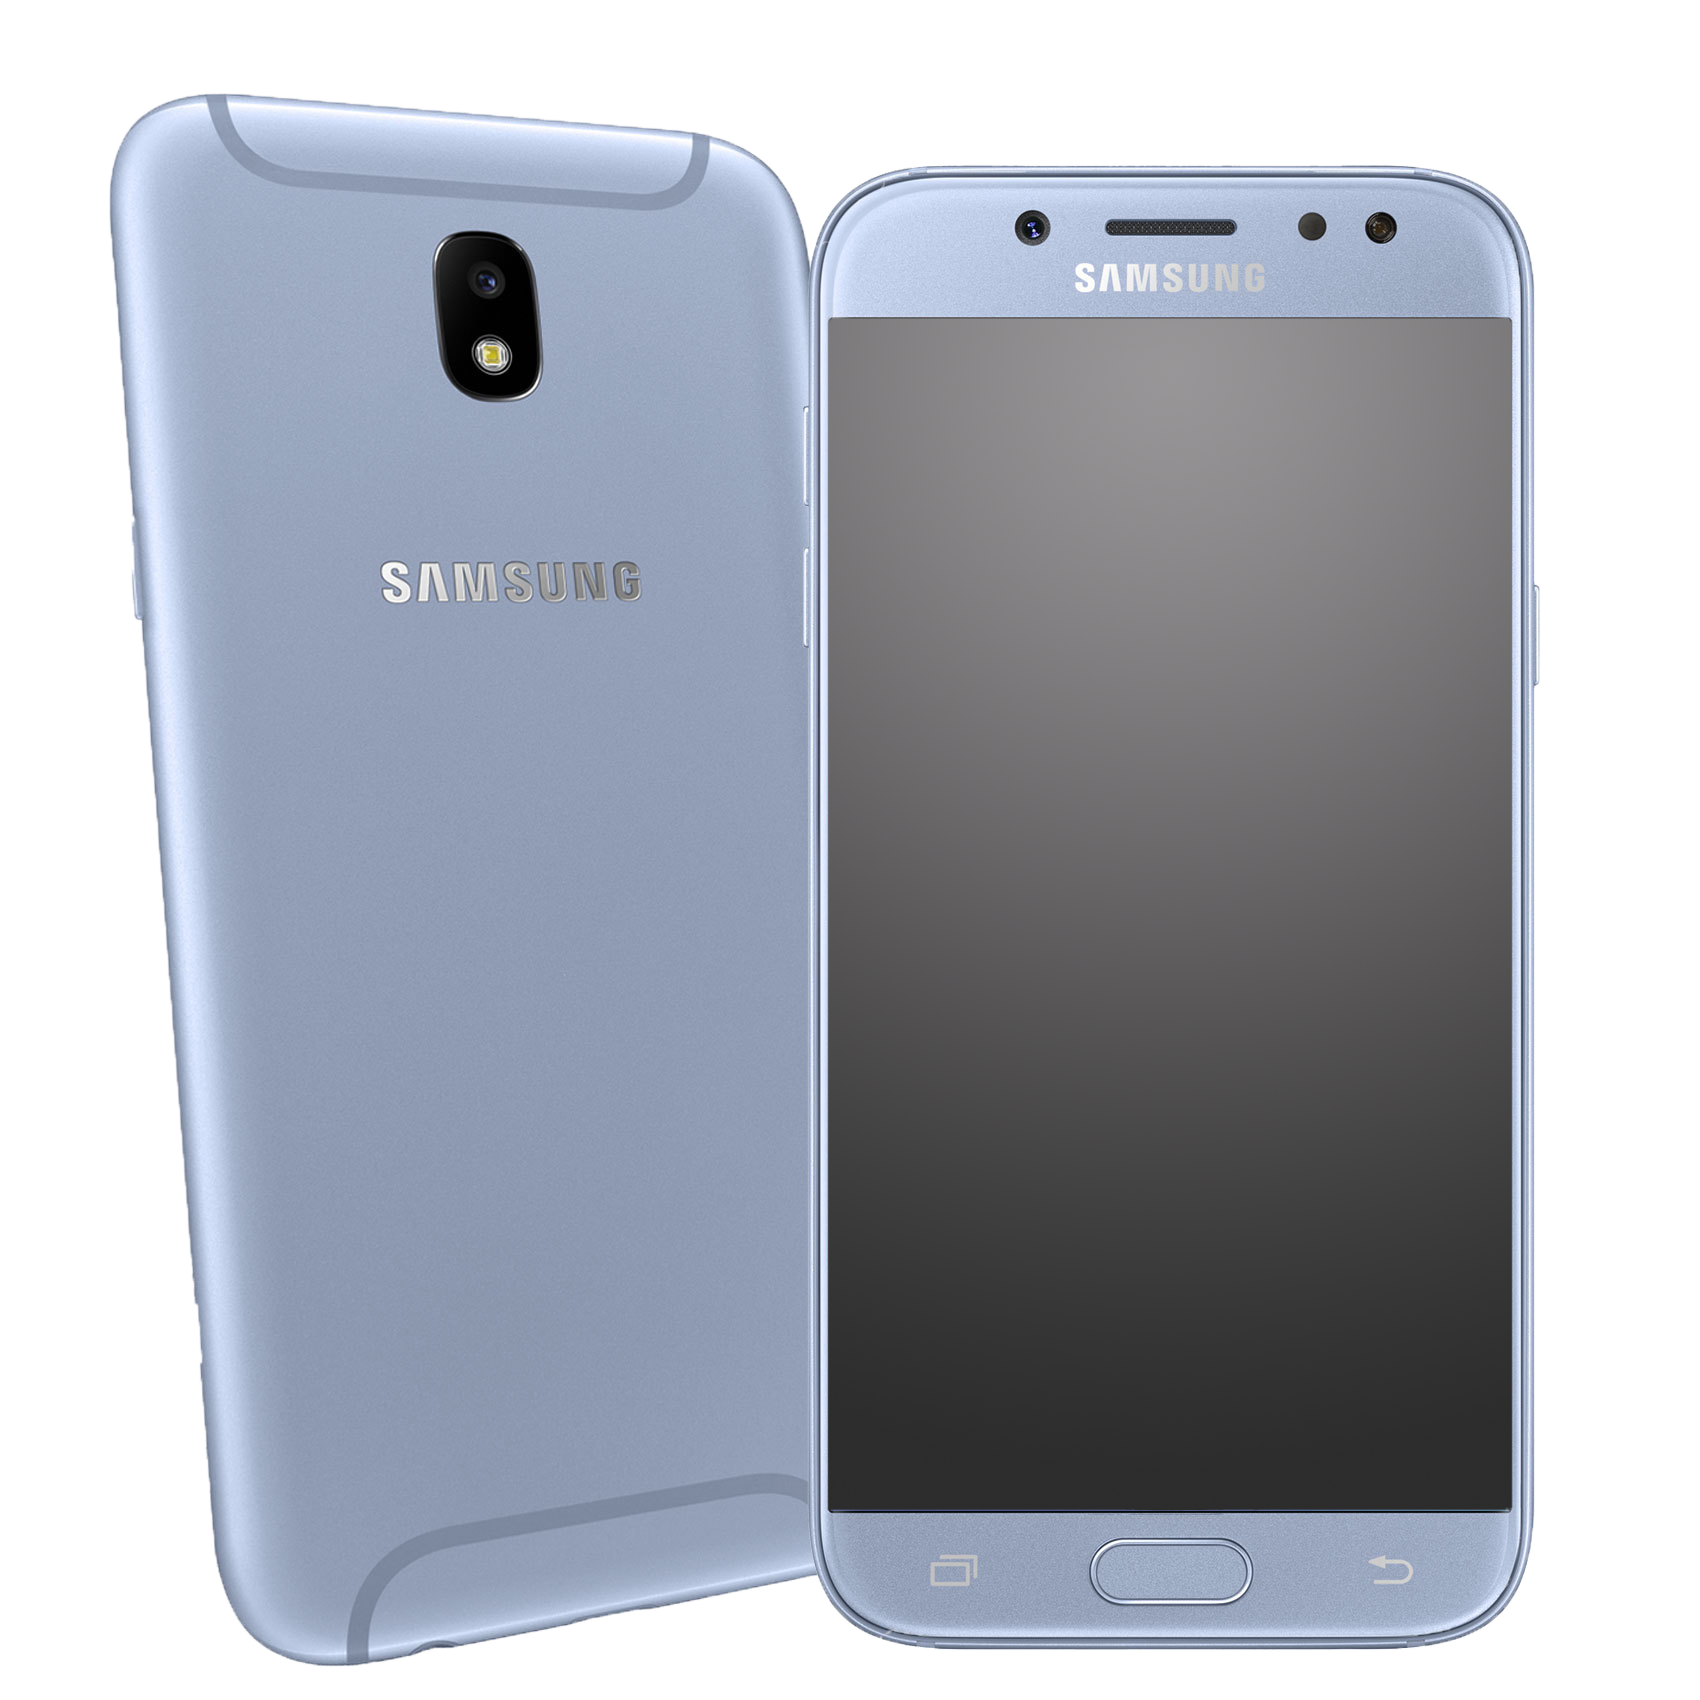 Samsung Galaxy J5 (2017) J530 Single-SIM blau - Ohne Vertrag